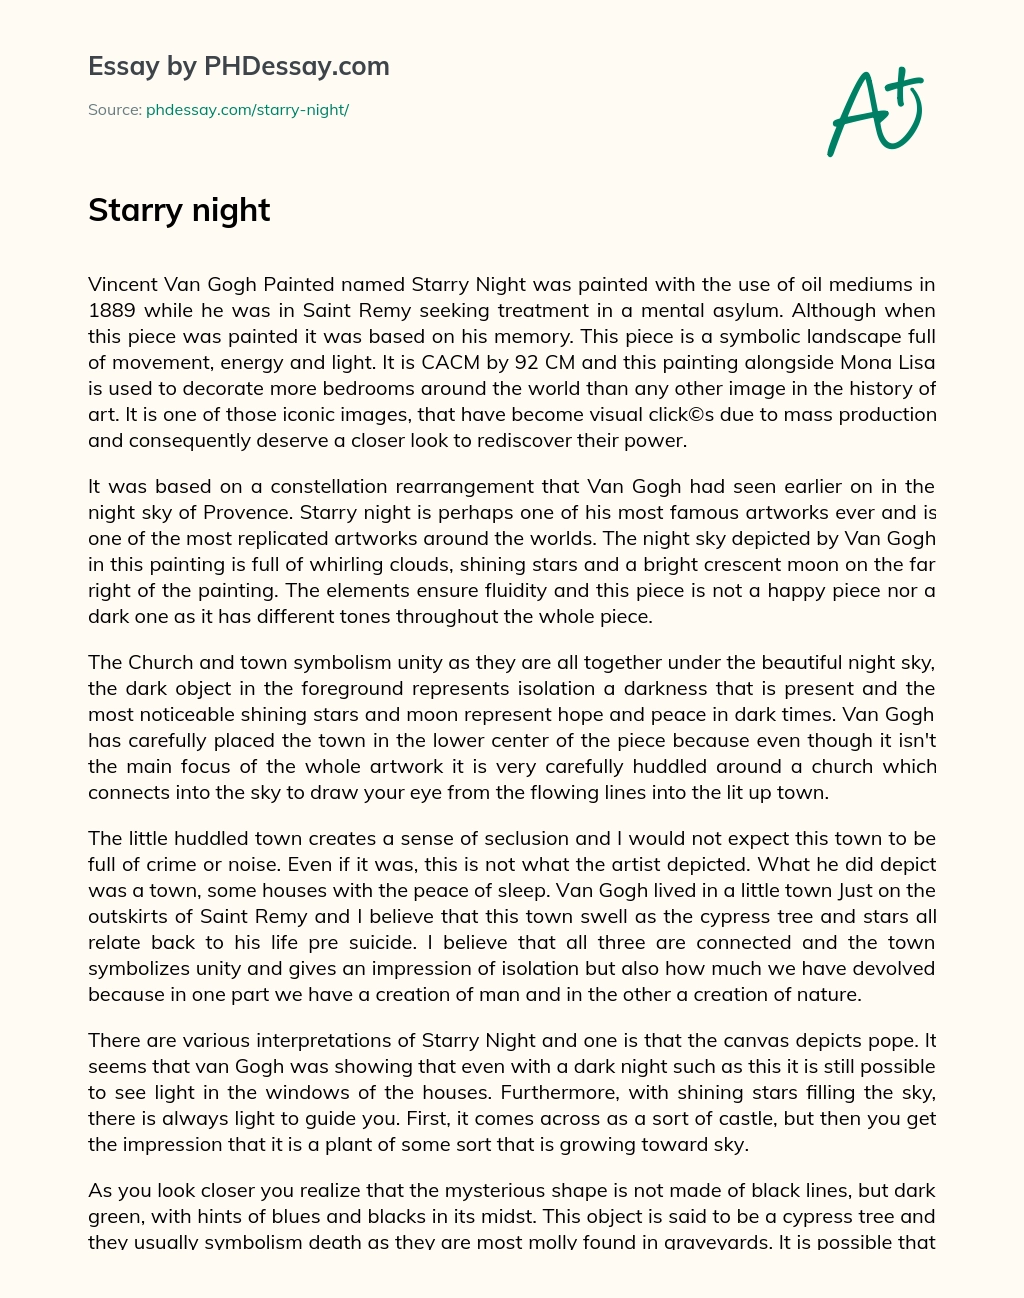 Starry night essay